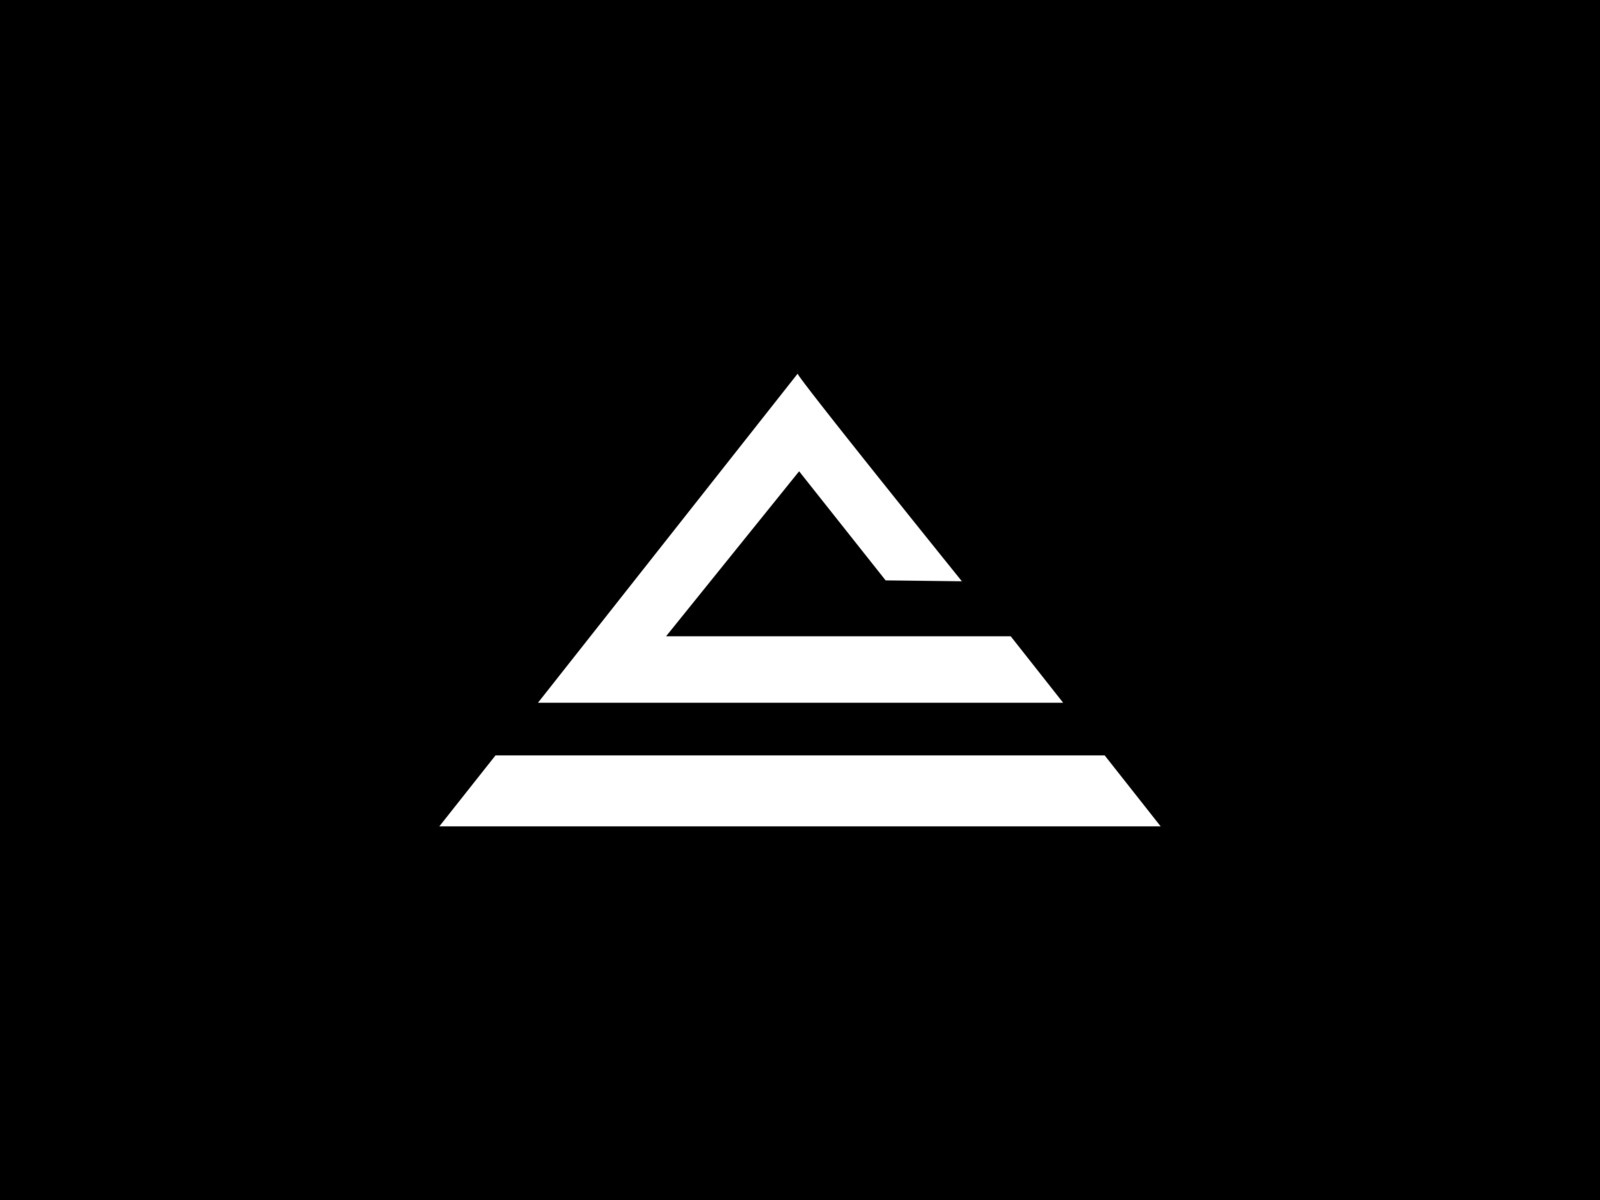 logo monogram by Minang_Art on Dribbble